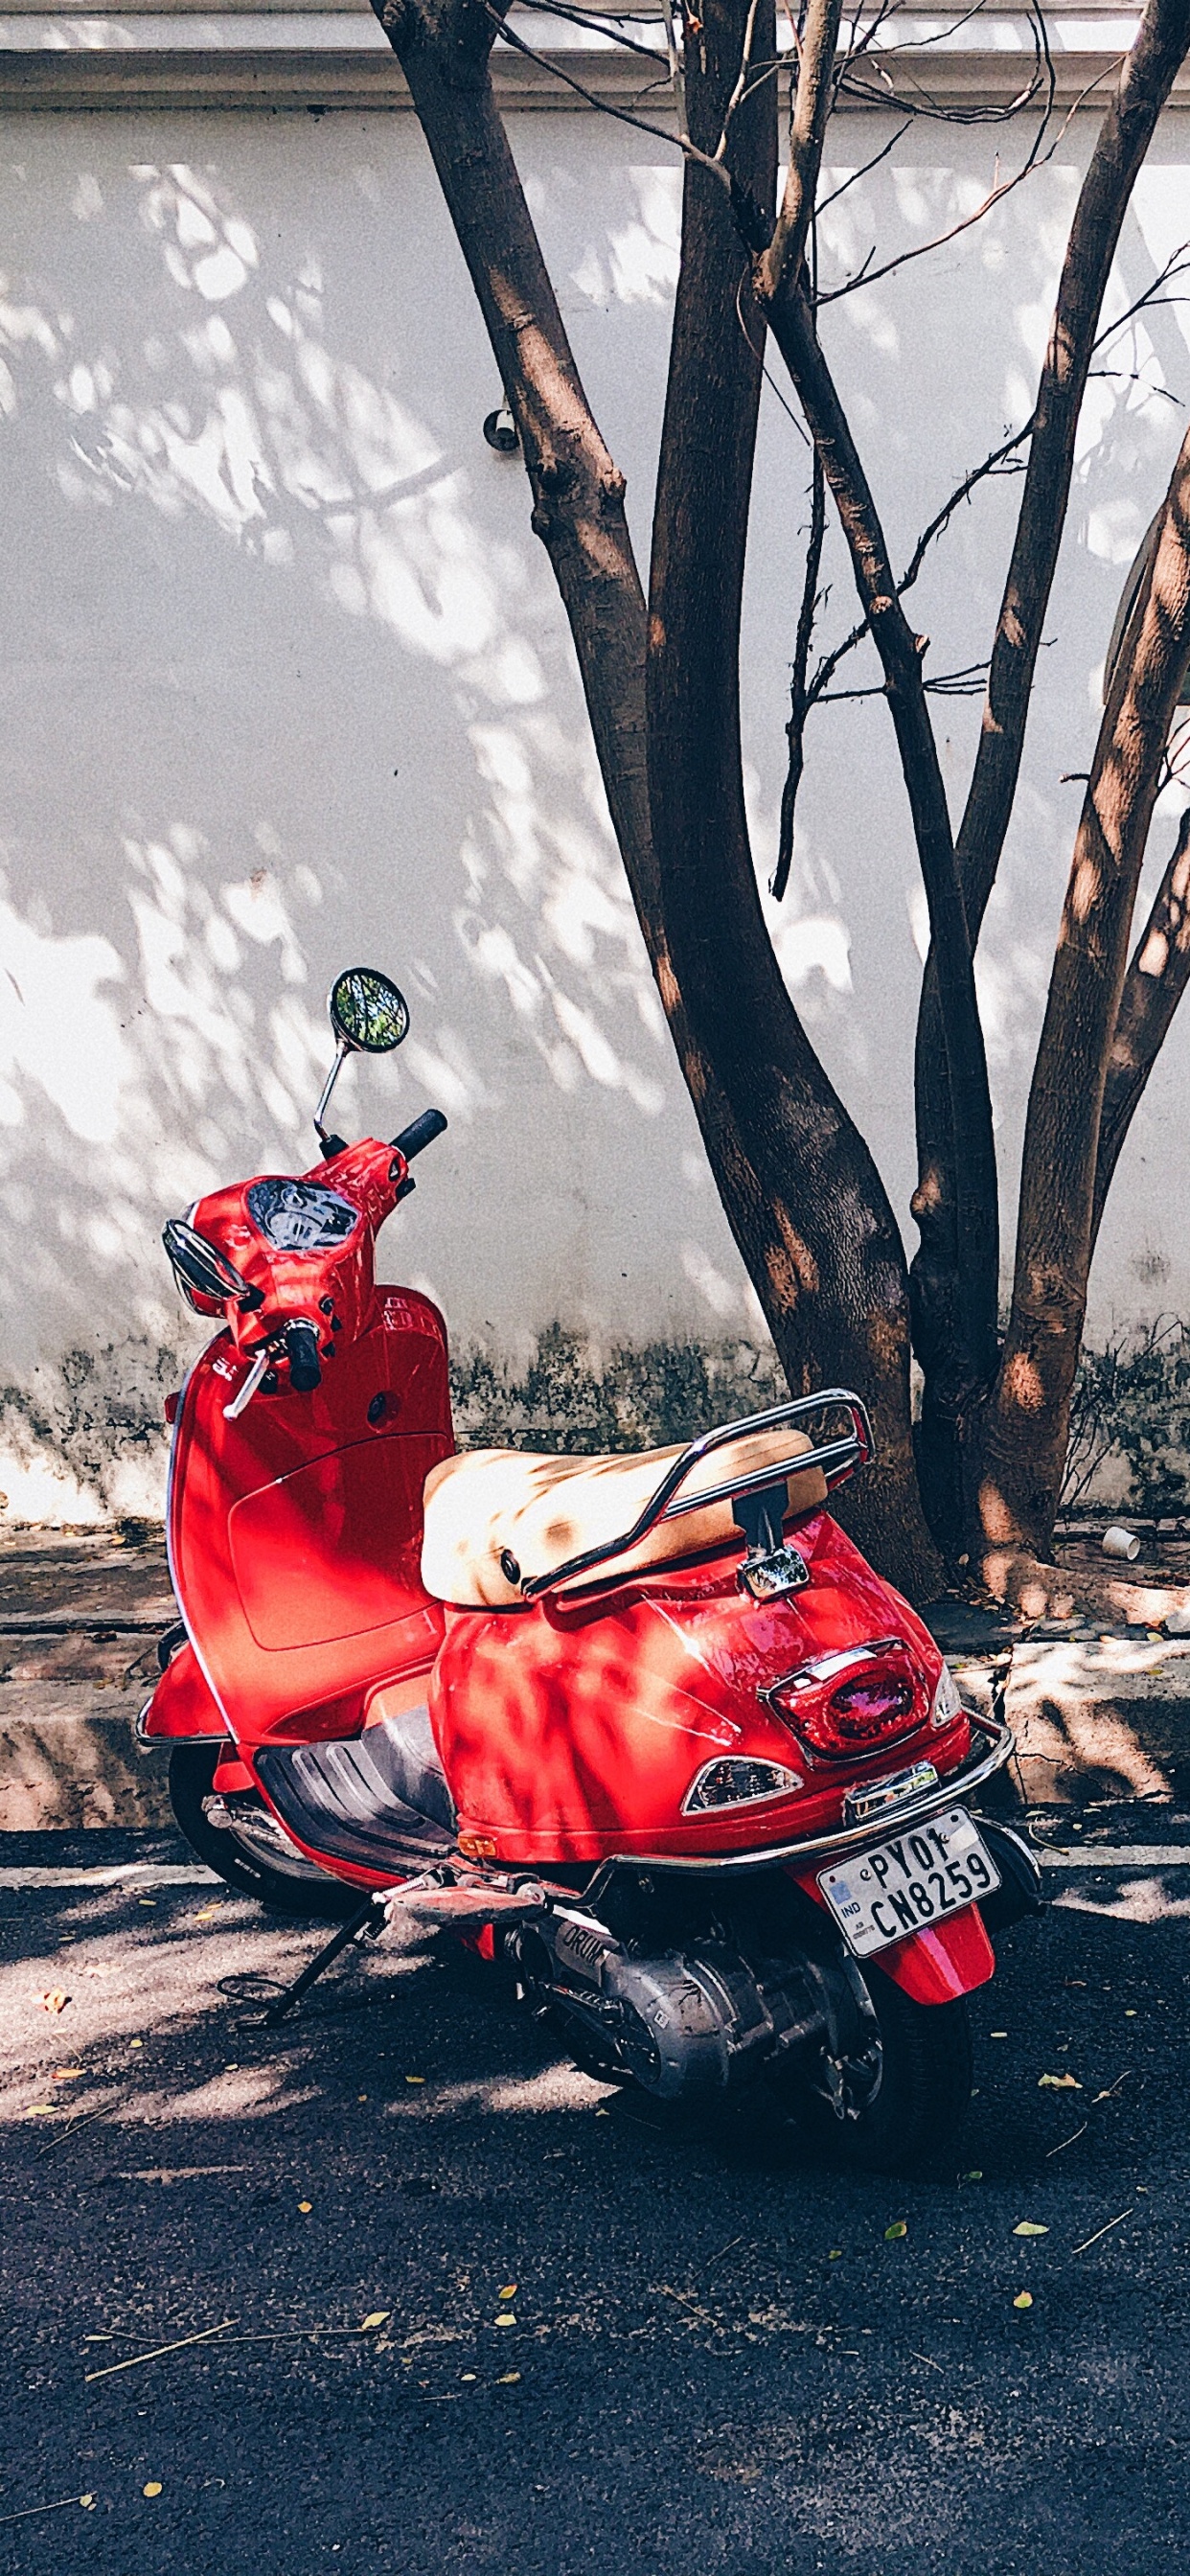 Hombre de Chaqueta Roja Montando Moto Roja en la Carretera Durante el Día. Wallpaper in 1242x2688 Resolution